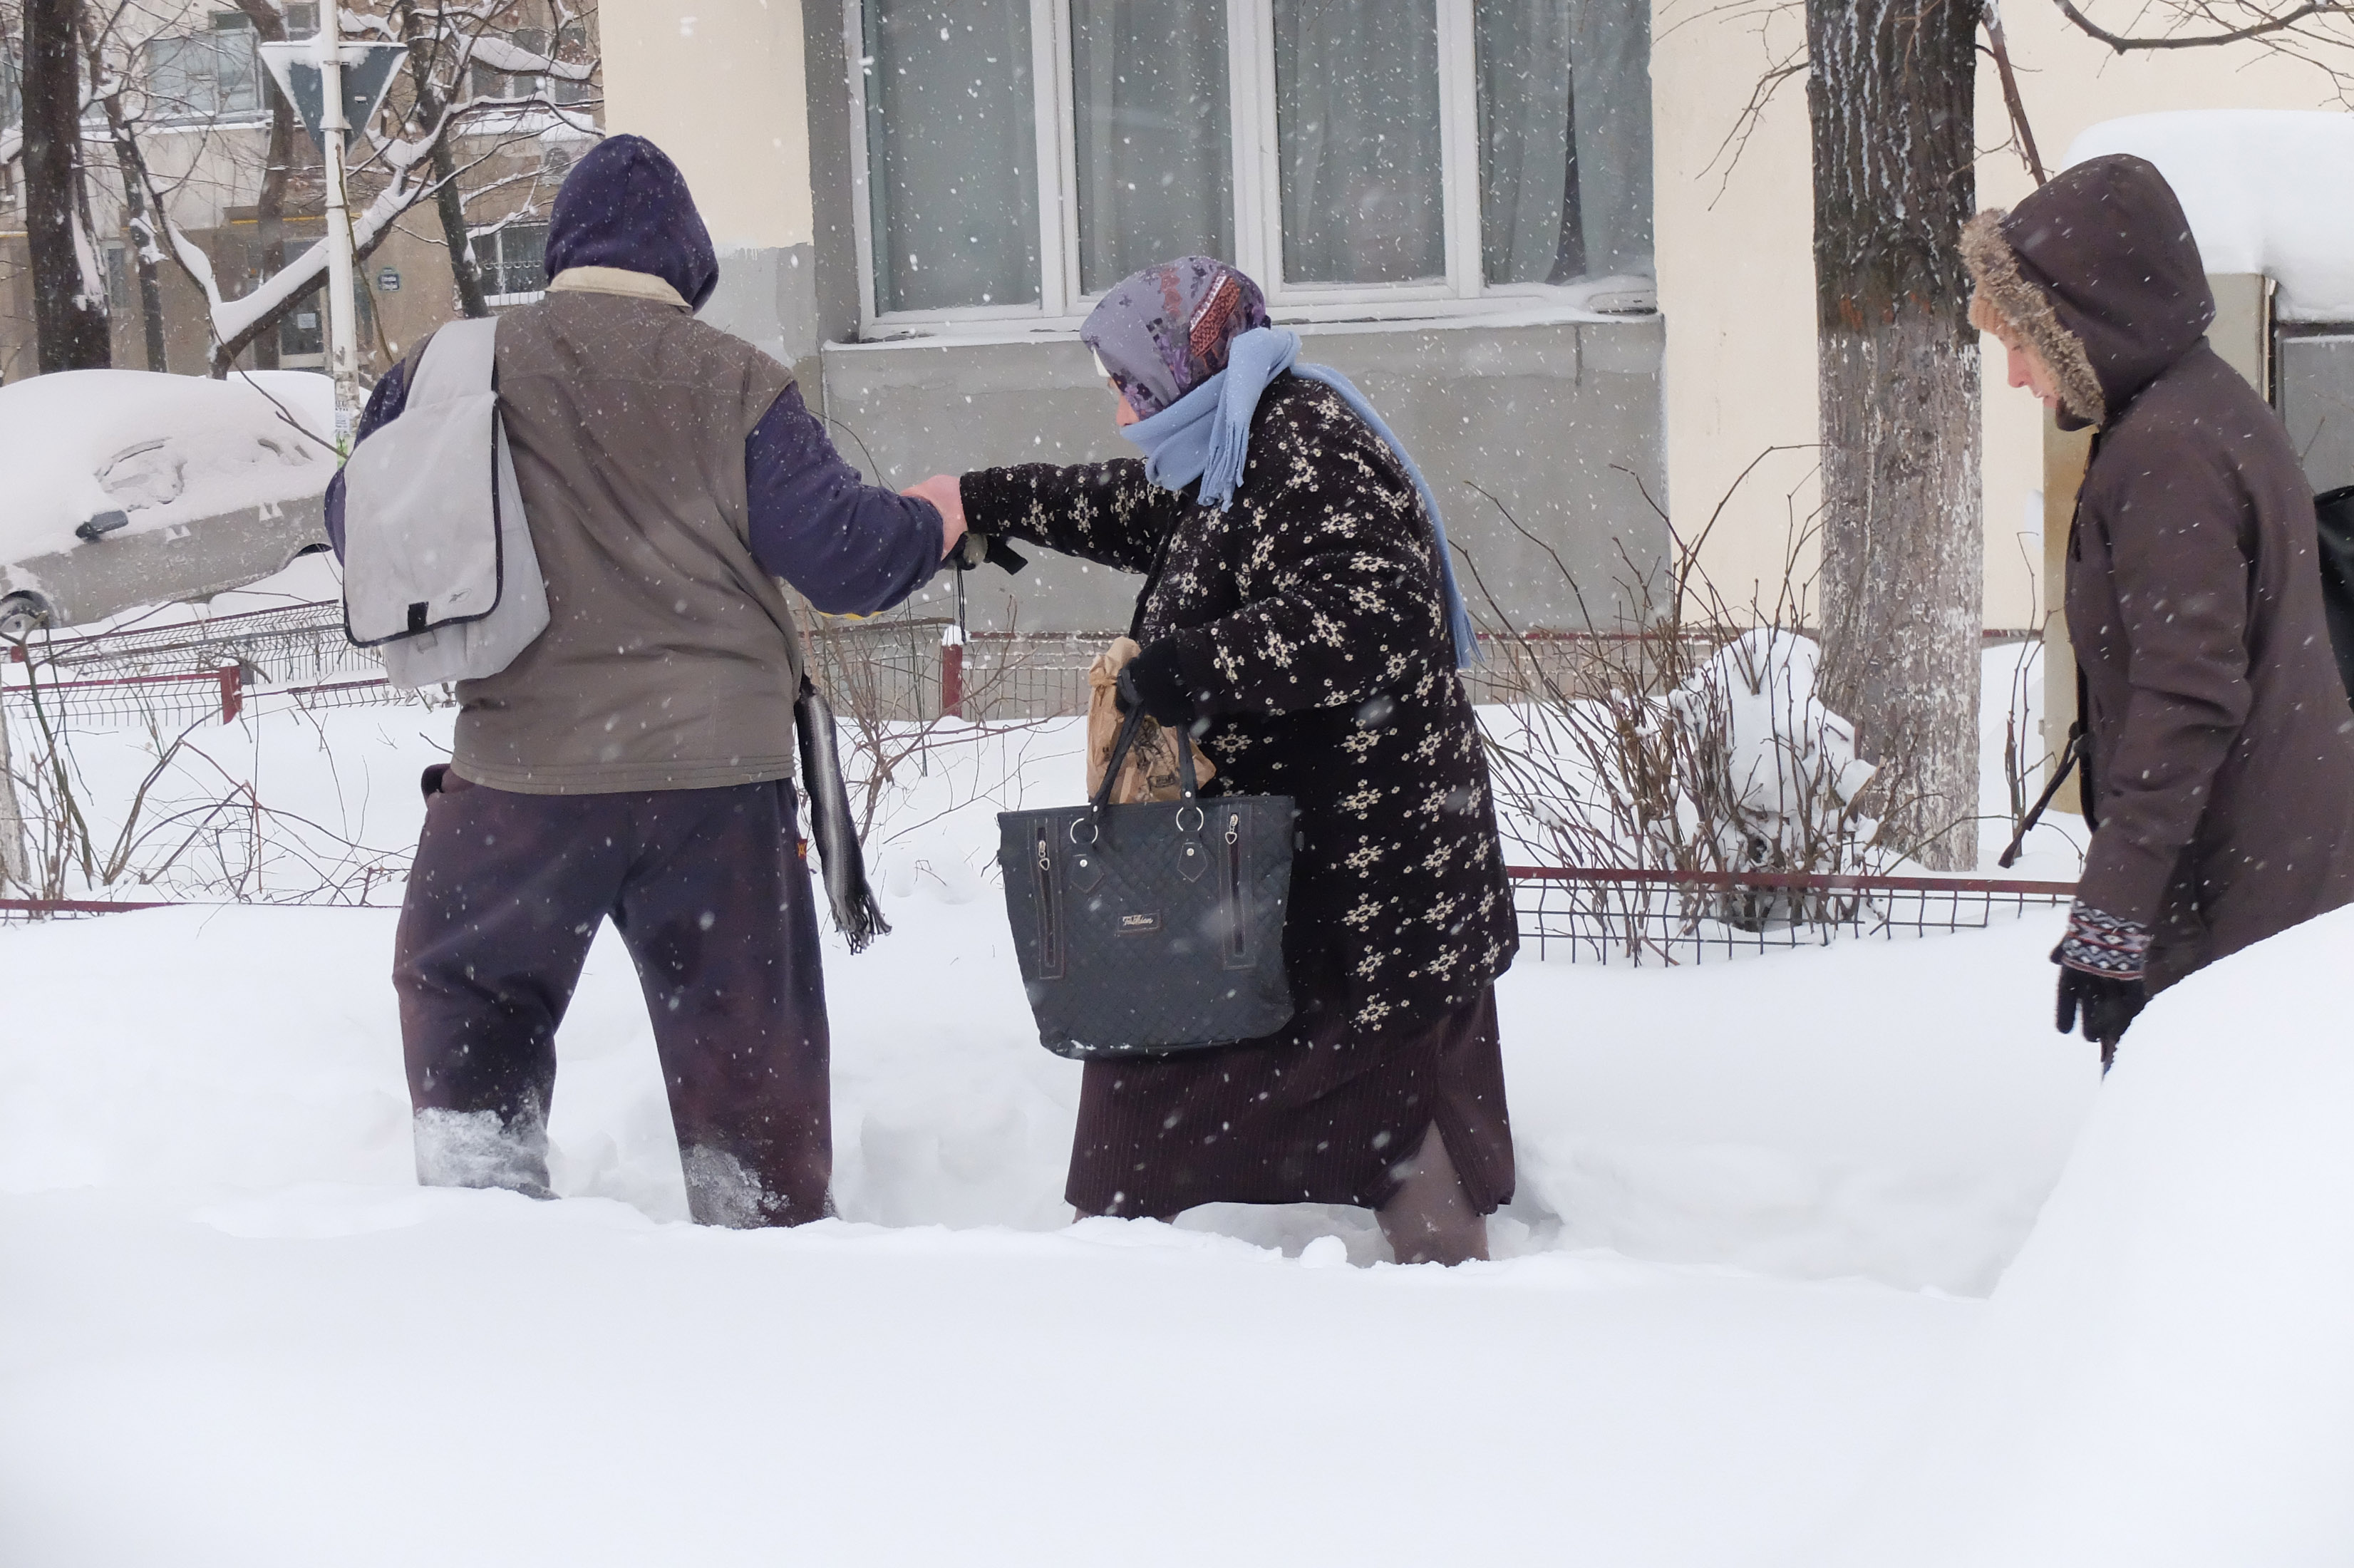 罗马尼亚遭遇暴风雪 人们在雪地中艰难前行